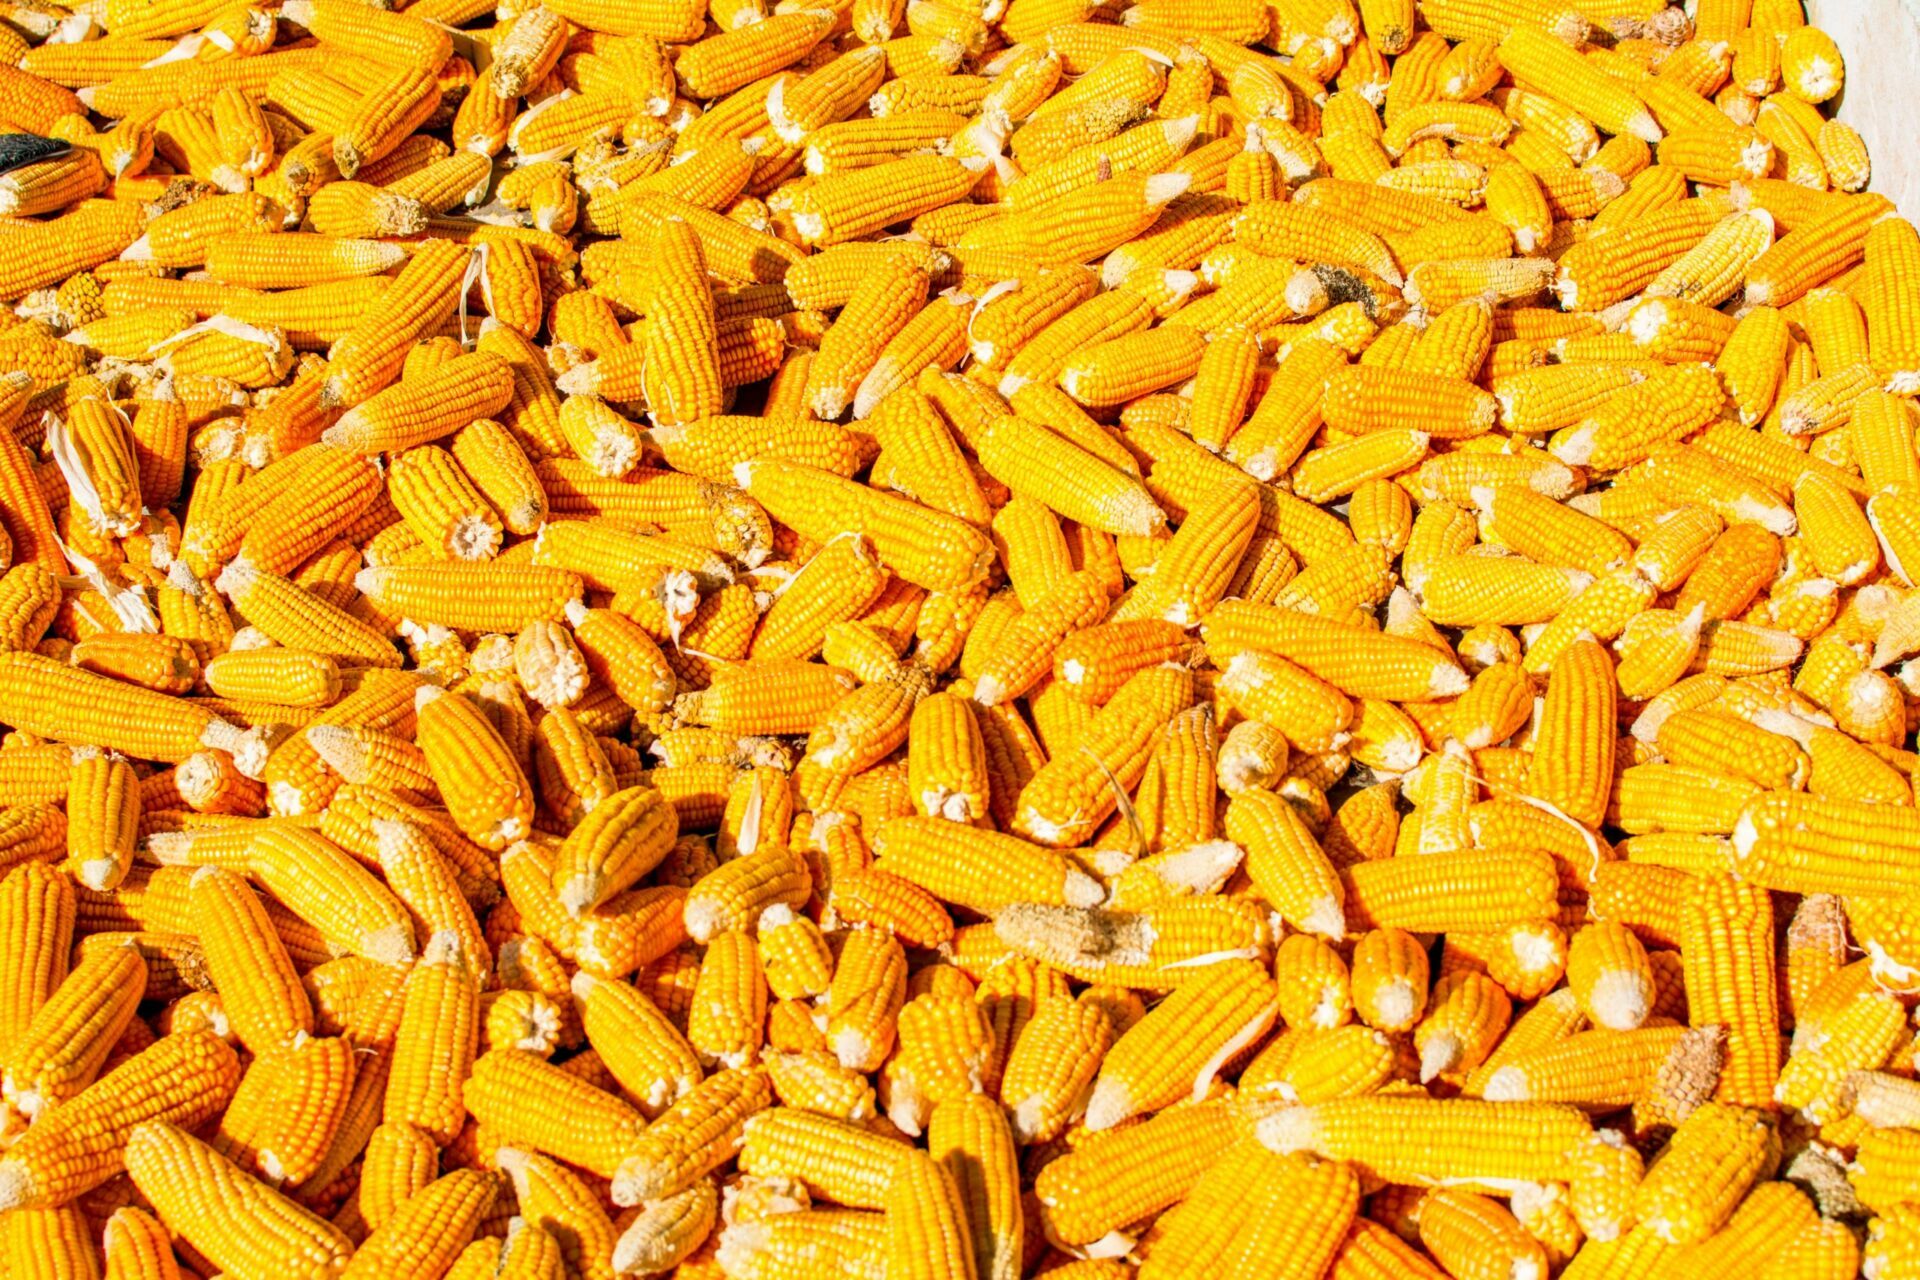 Field corn that's still on the cob is shown in a bin.